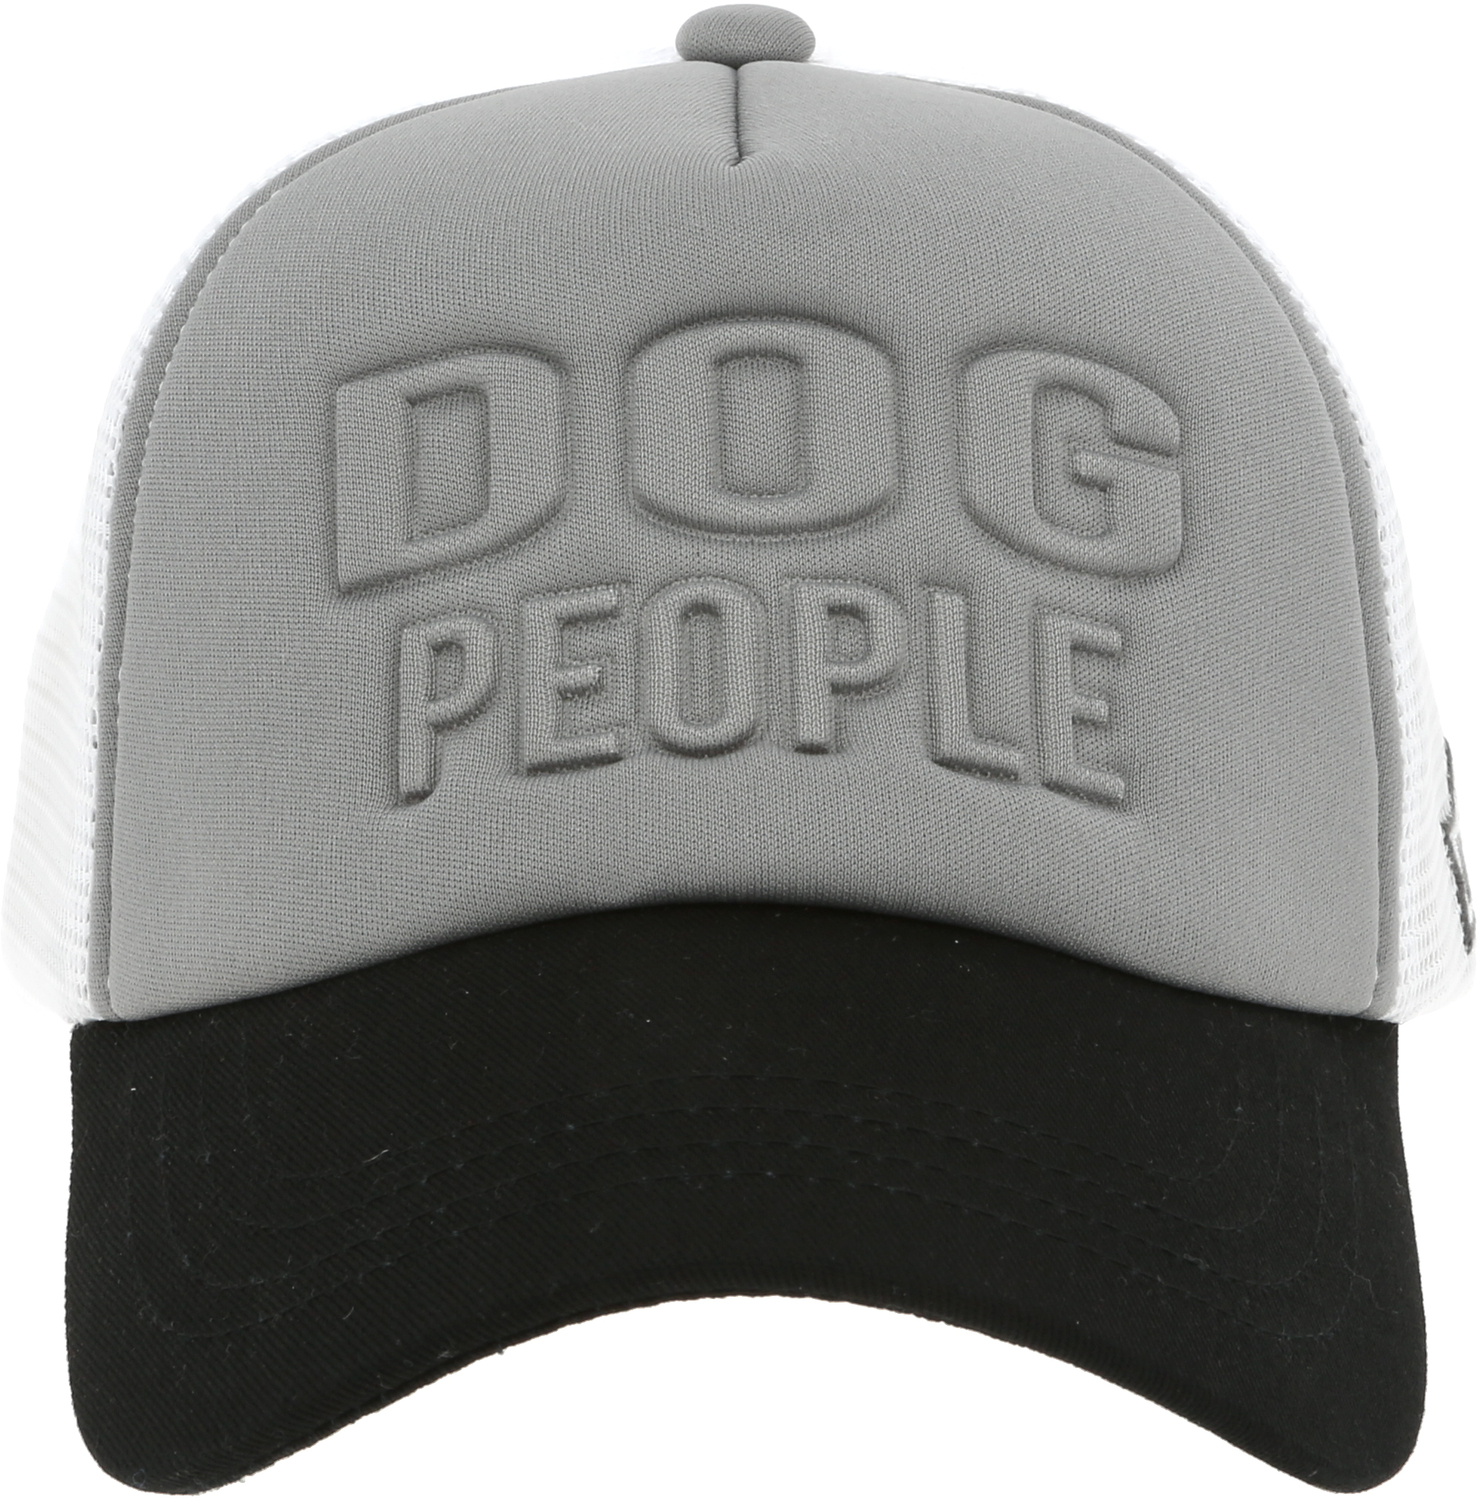 Dog People by We People - Dog People - Adjustable Dark Gray Neoprene Mesh Hat